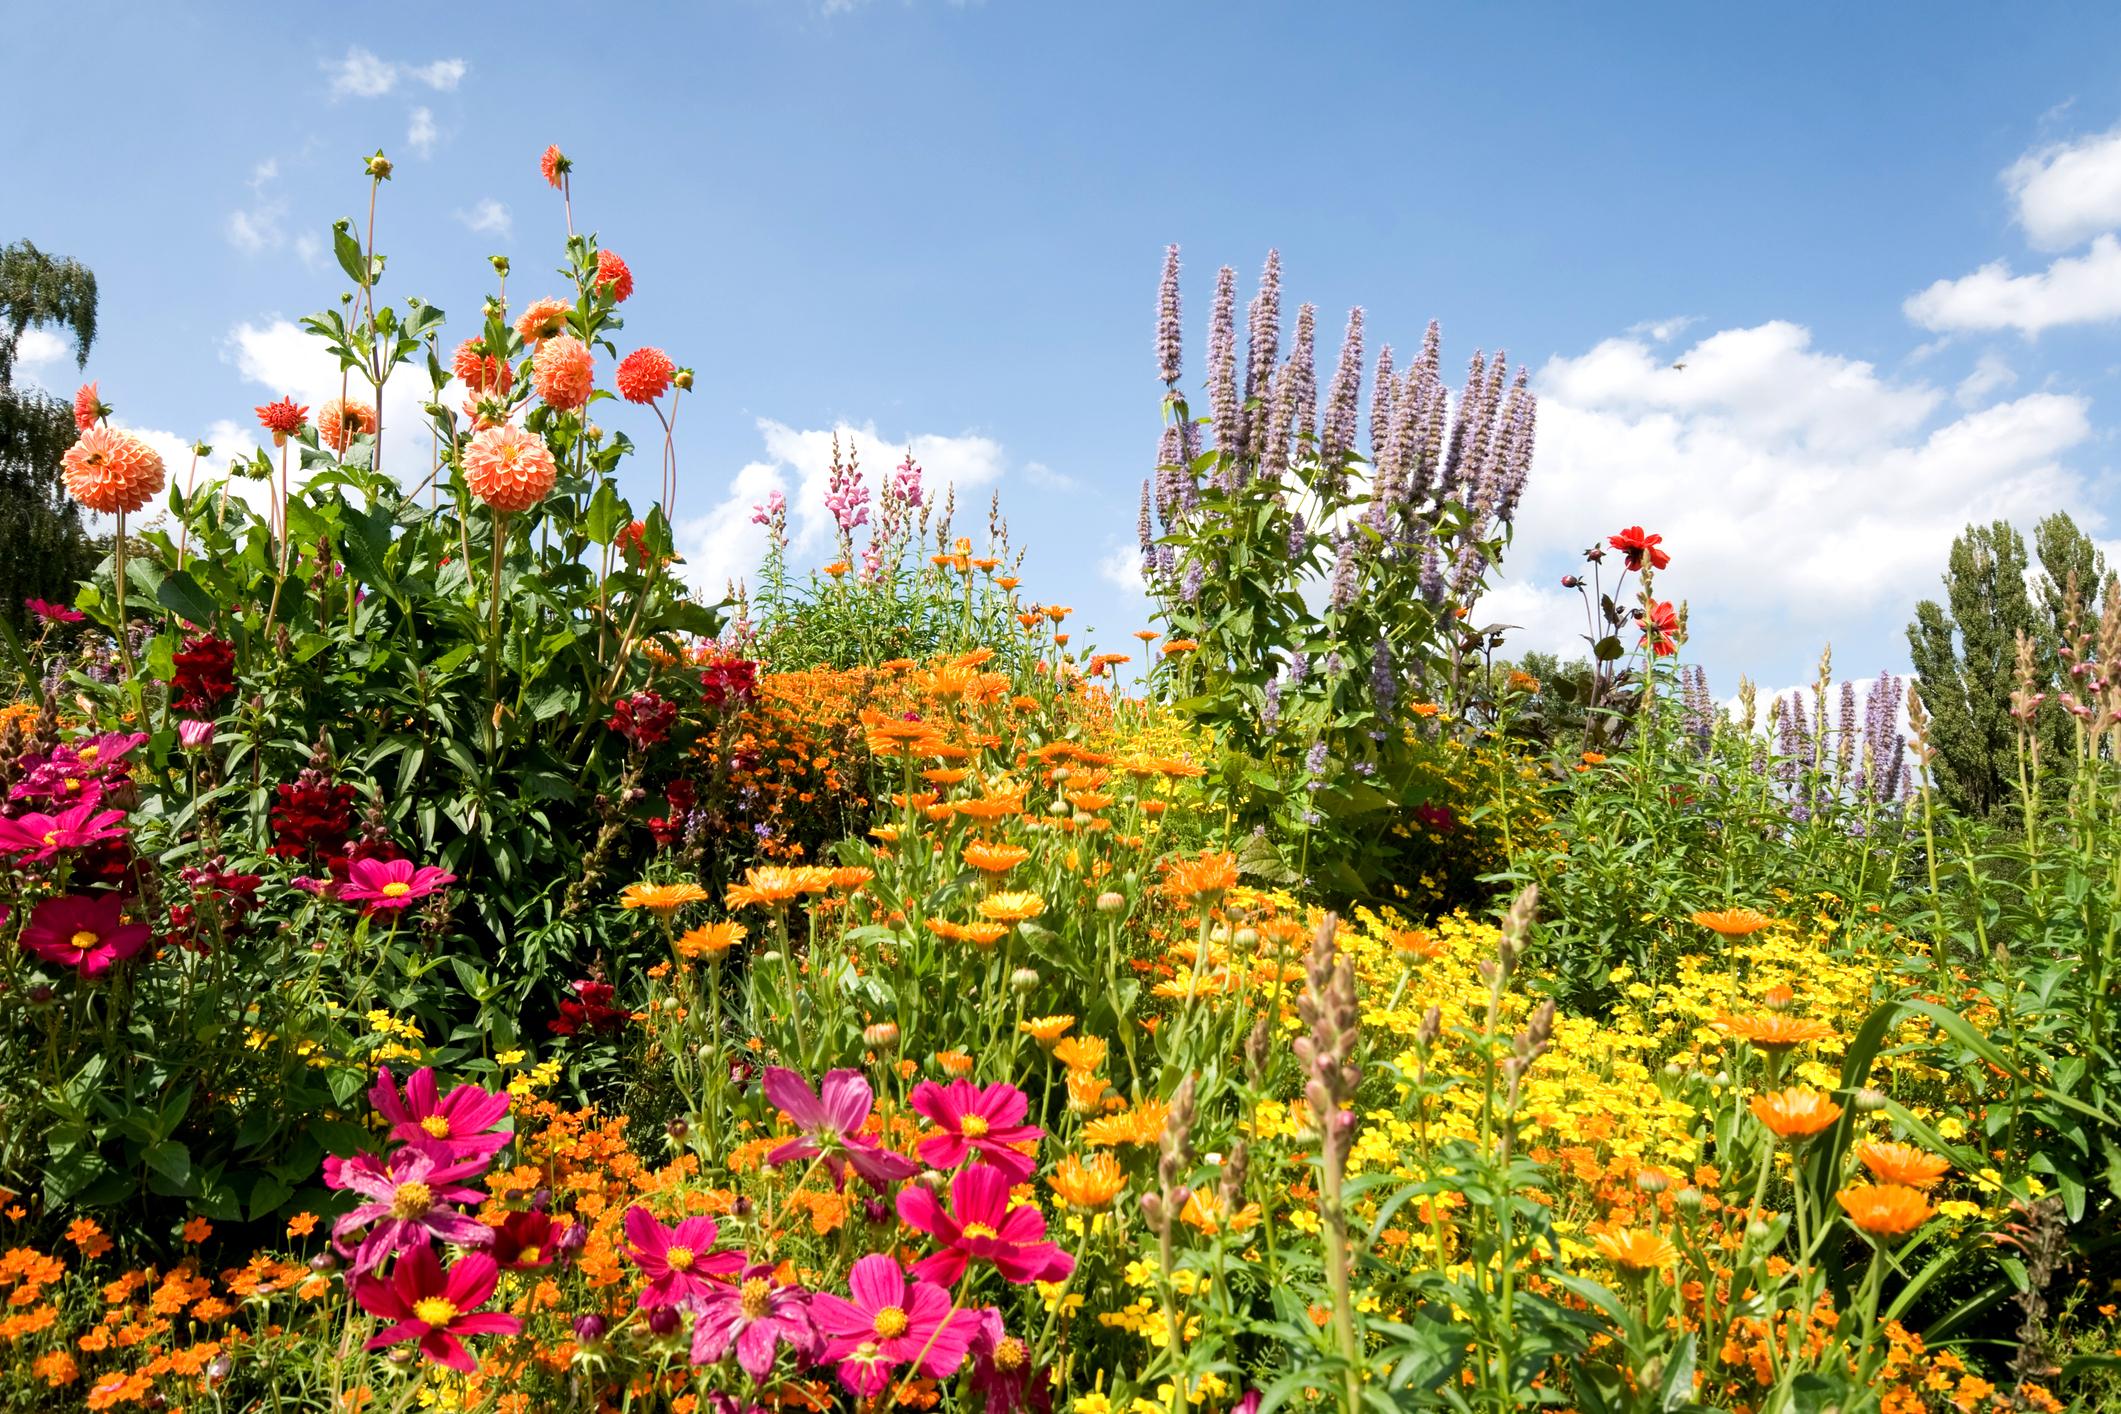 Tendances pour le jardin en 2023 : Le jardinage durable et proche de la nature